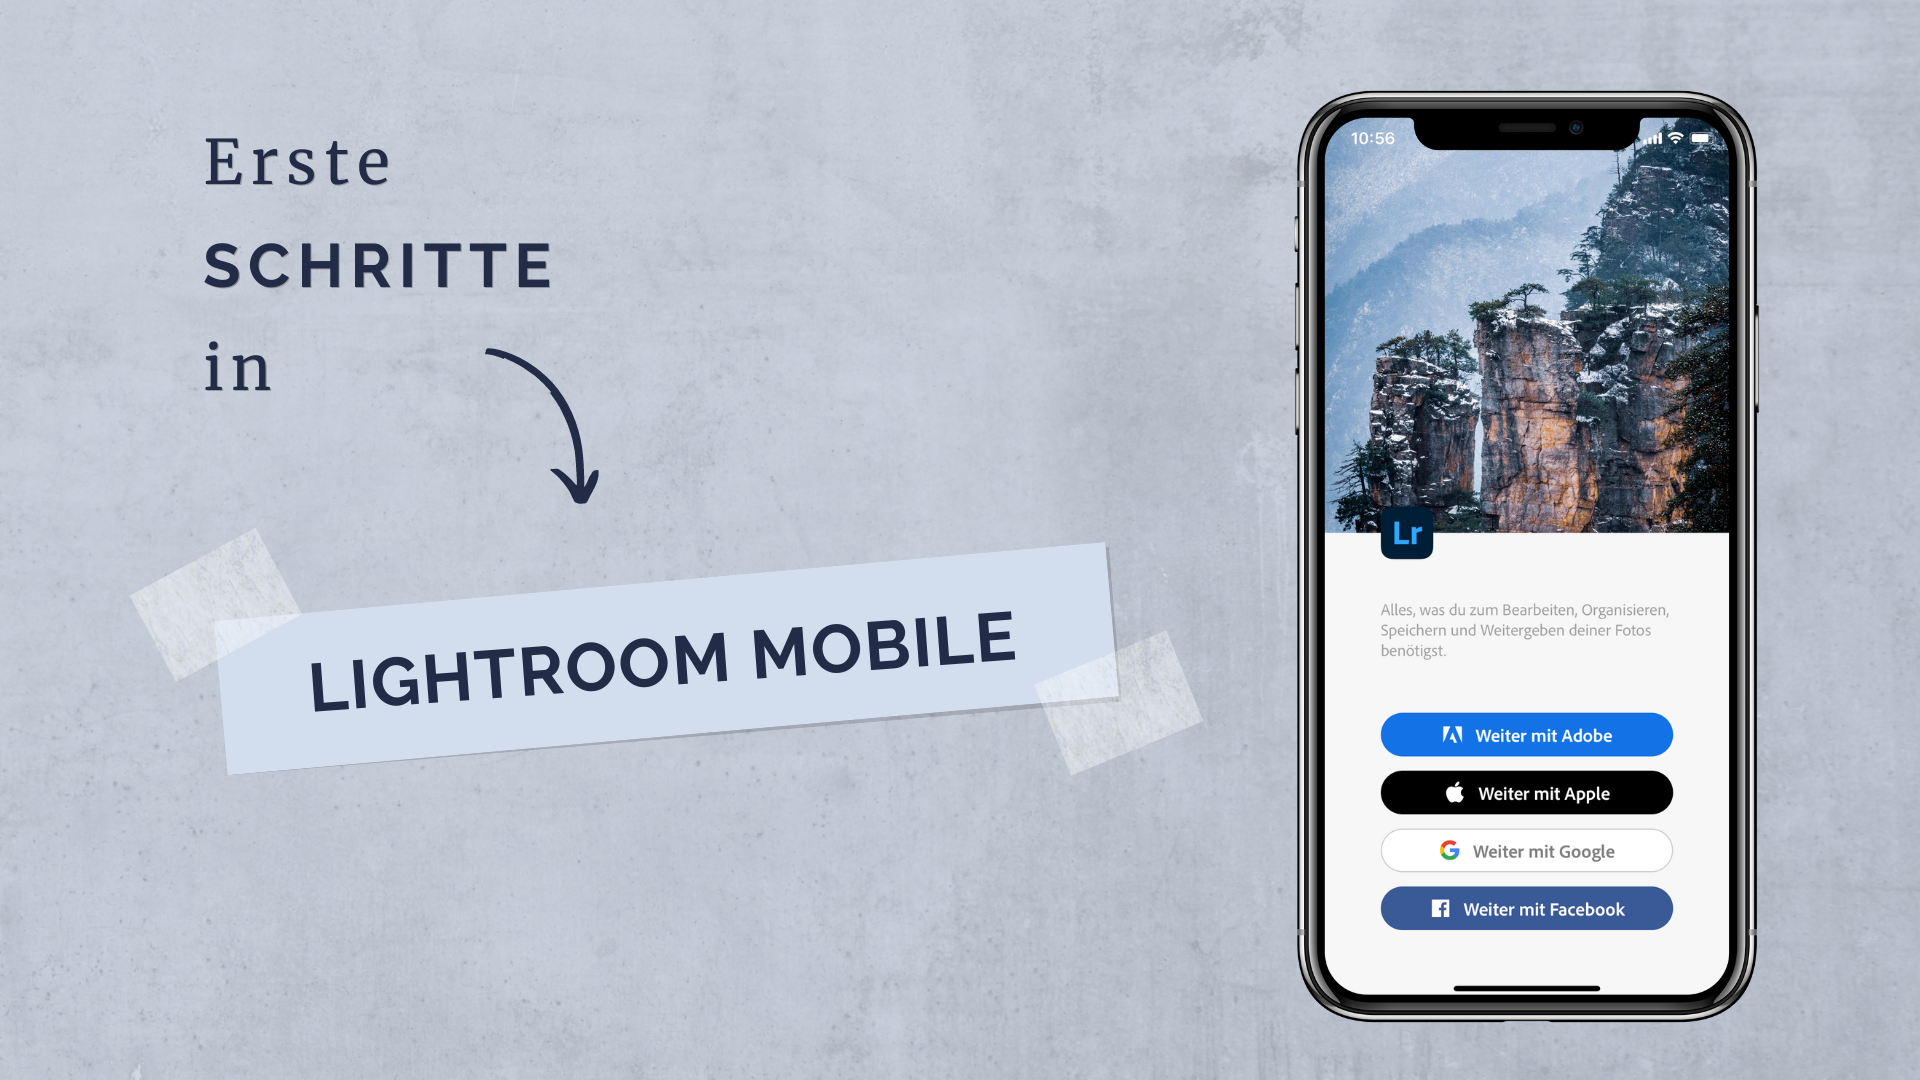 Die Anmeldeoberfläche von der App Lightroom Mobile wird angezeigt.